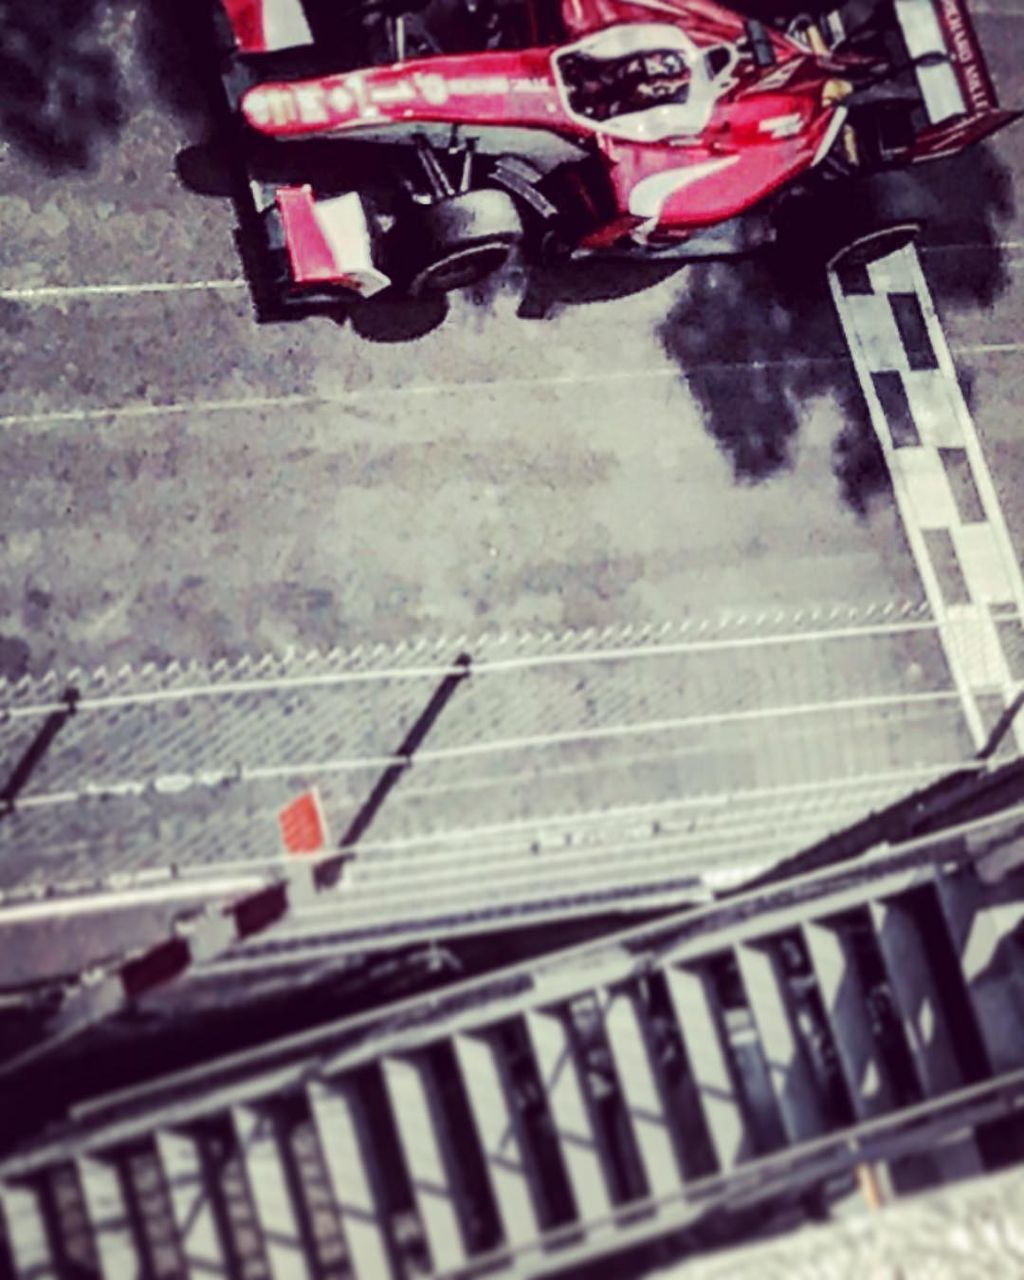 Die steilen Stufen des Aufstiegs. Leclerc 2017 in Monaco in der Formel 2, kurz nach dem Tod seines Vaters. Als klar schnellster Pilot im Feld, aber im Rennen vom Pech verfolgt. Nun konnte er seinem Vater das erste Podium in der Formel 1 widmen.